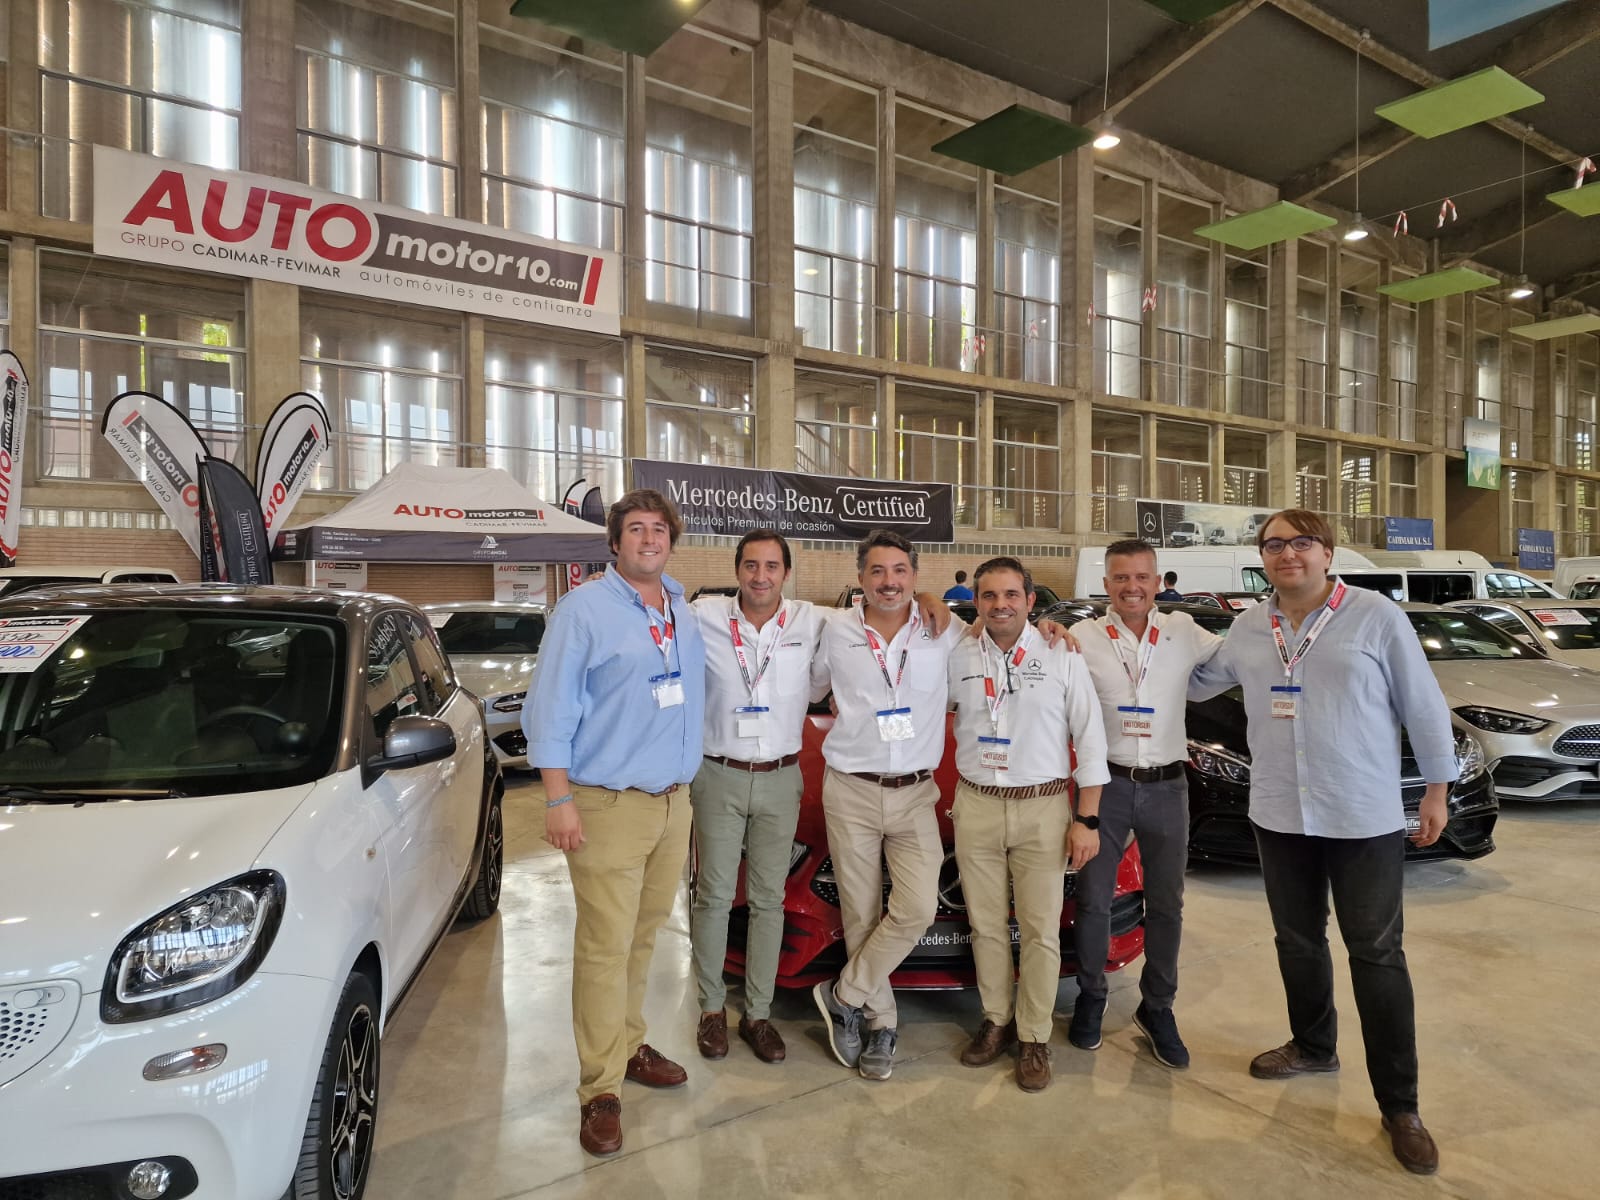 Motorsur 2022: el éxito de Automotor10 en el salón de la movilidad del sur peninsular